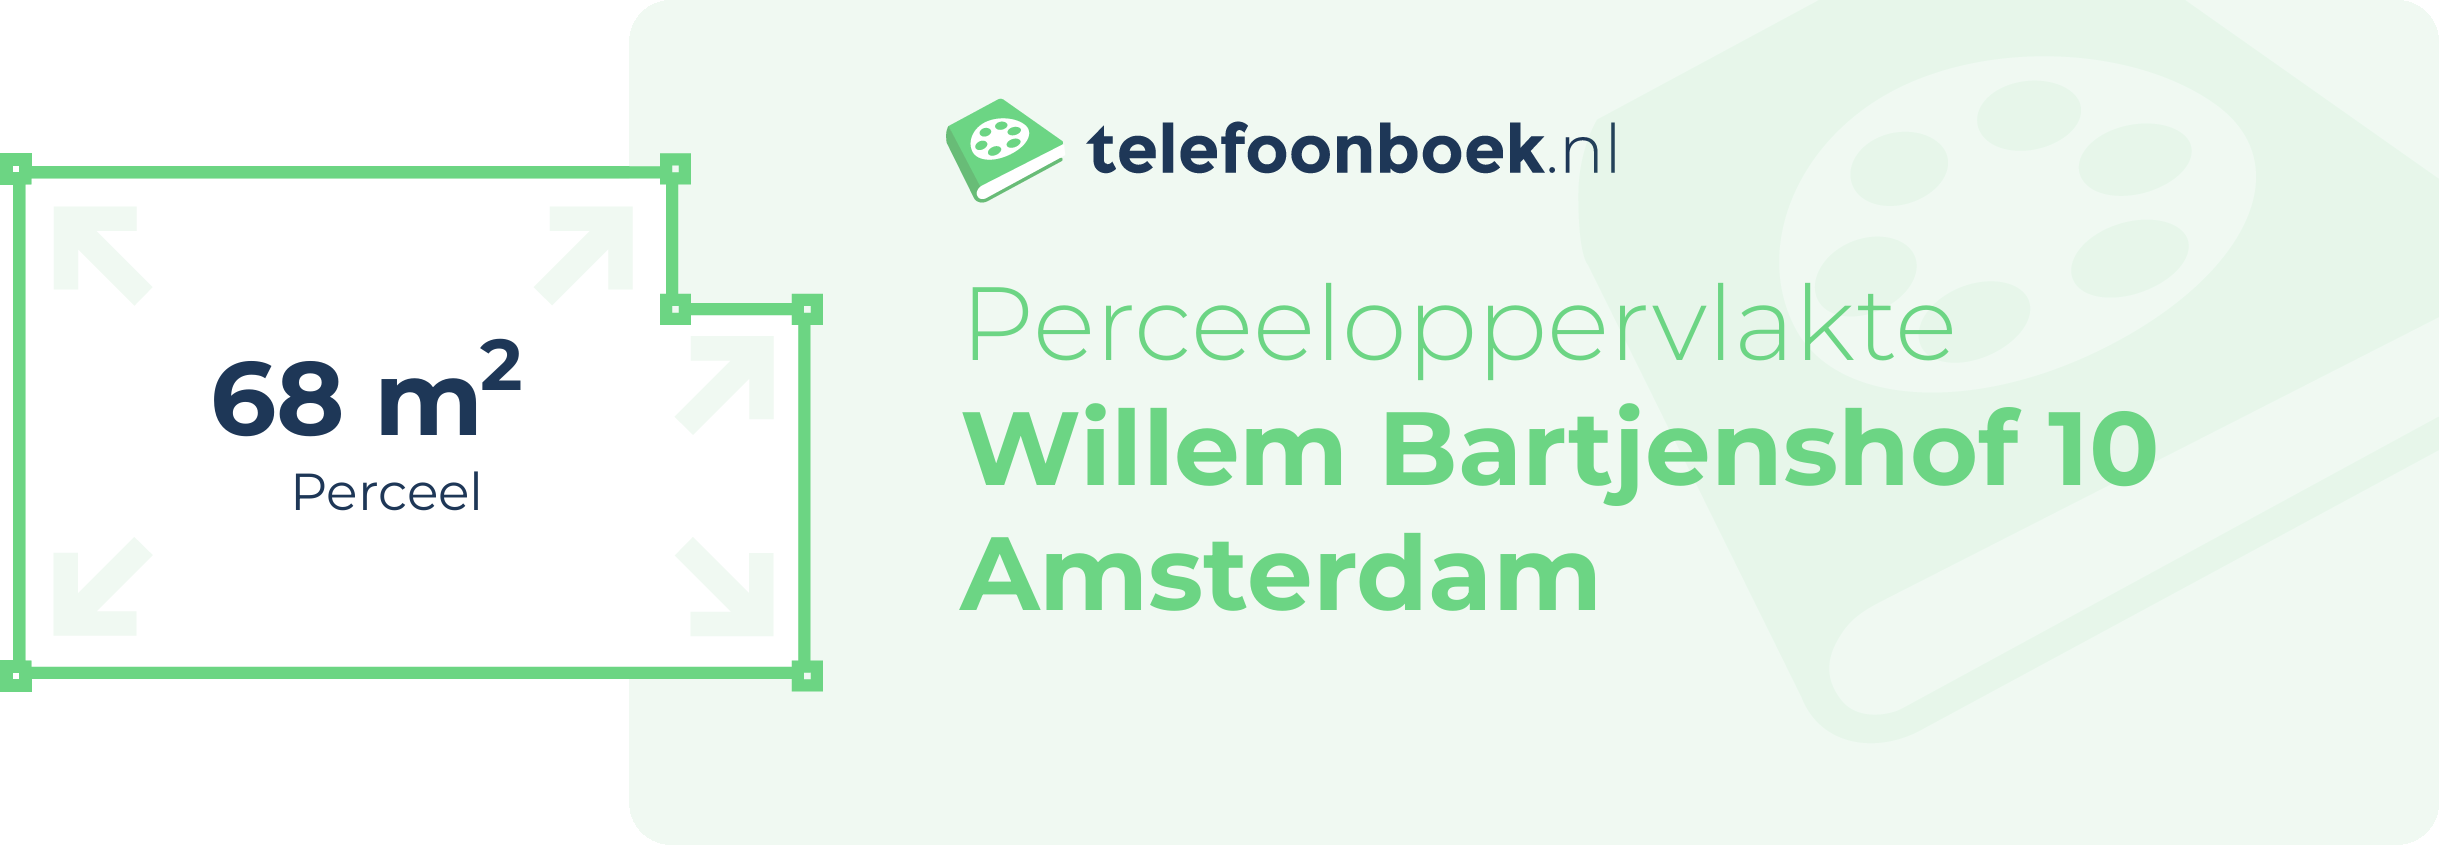 Perceeloppervlakte Willem Bartjenshof 10 Amsterdam